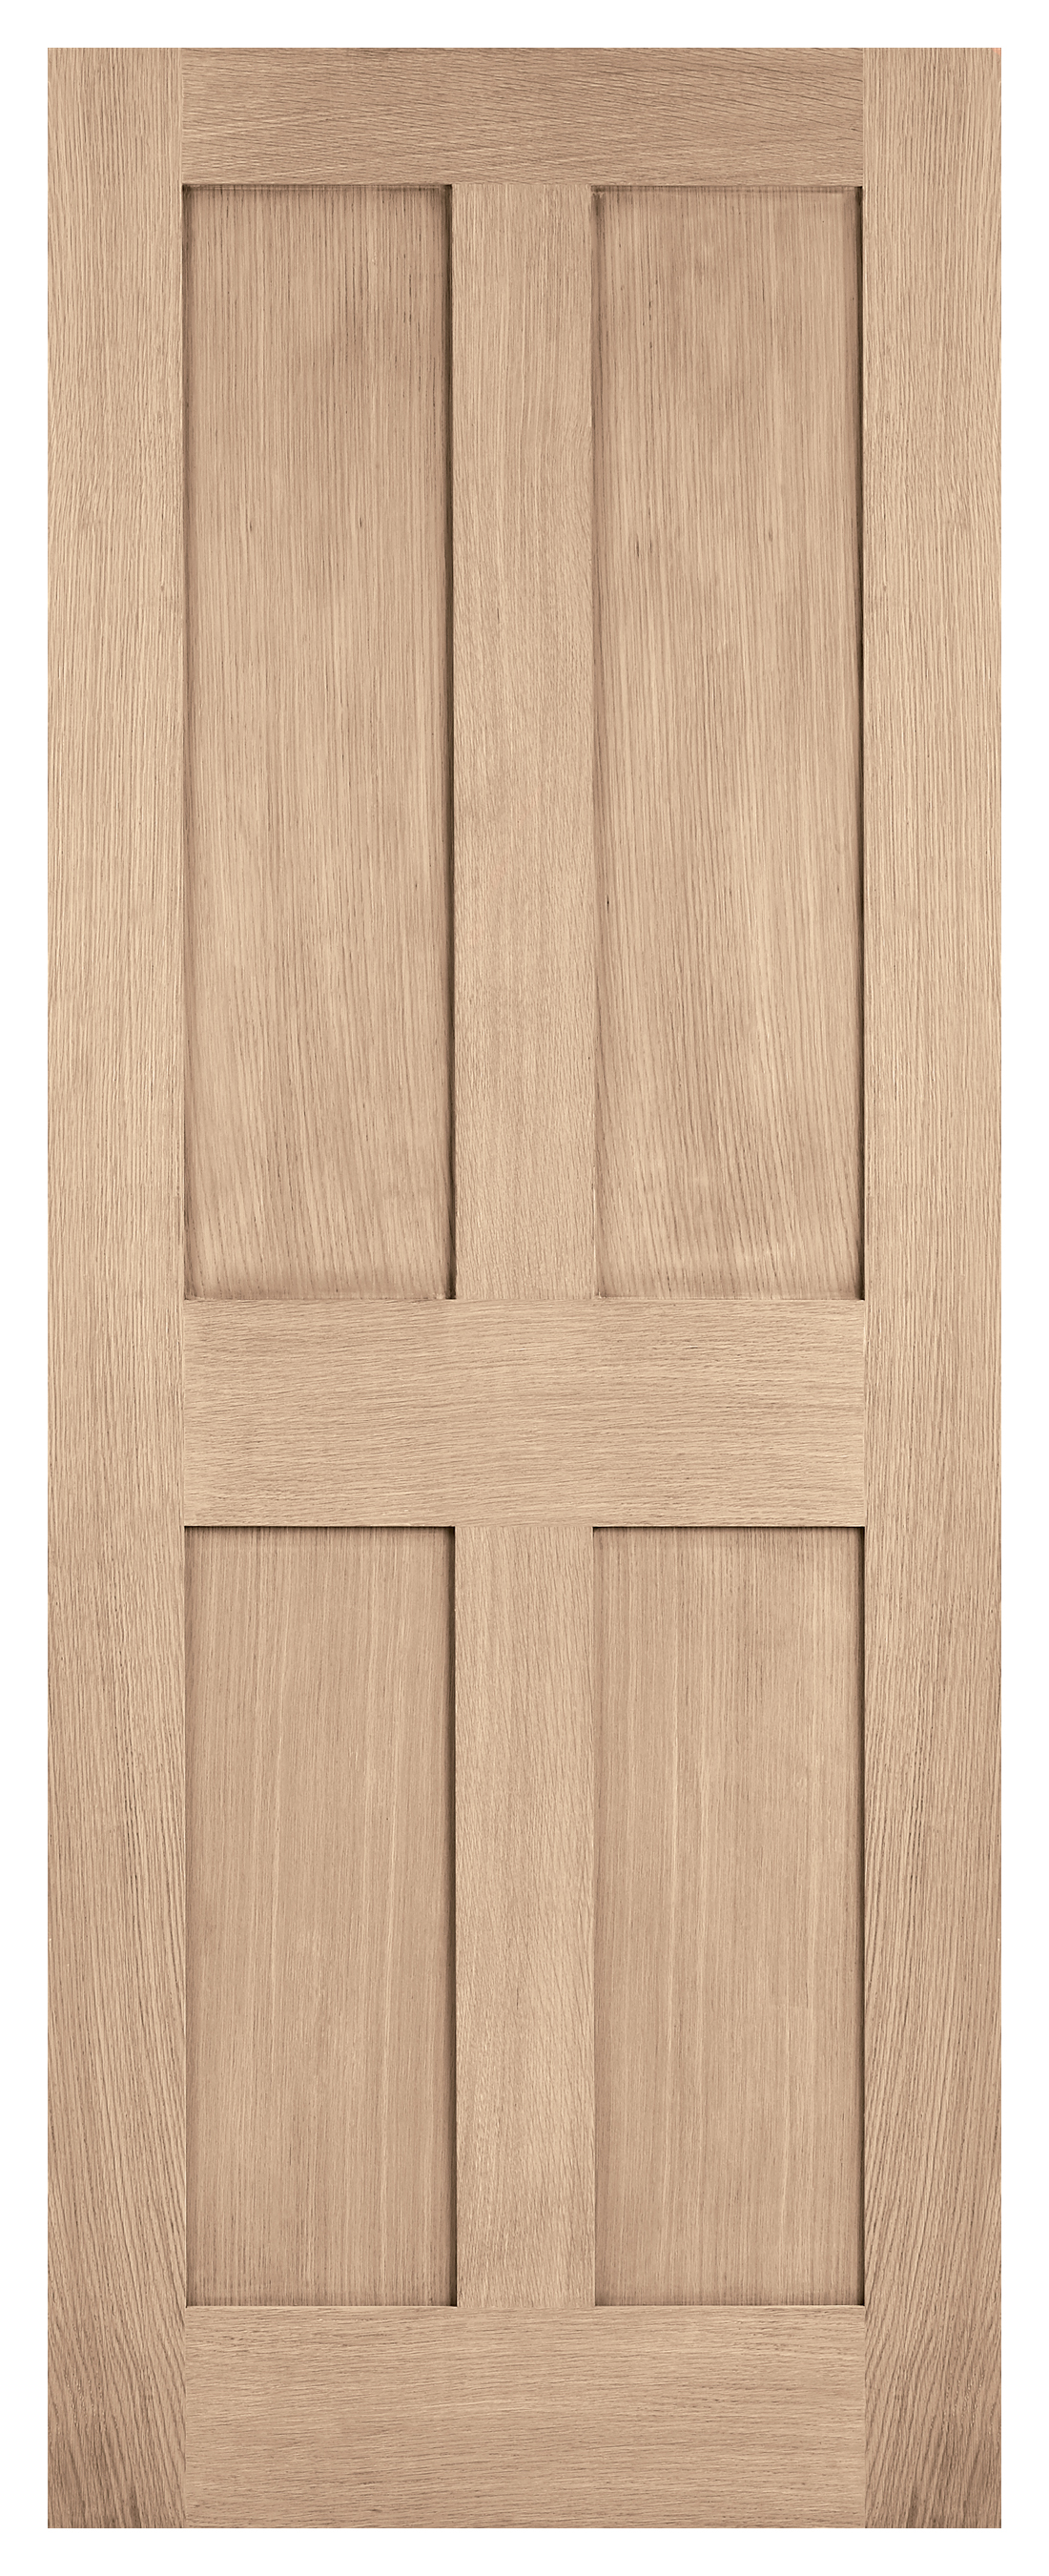 Image of LPD Internal London 4 Panel Pre-finished Oak FD30 Fire Door - 838 x 1981mm